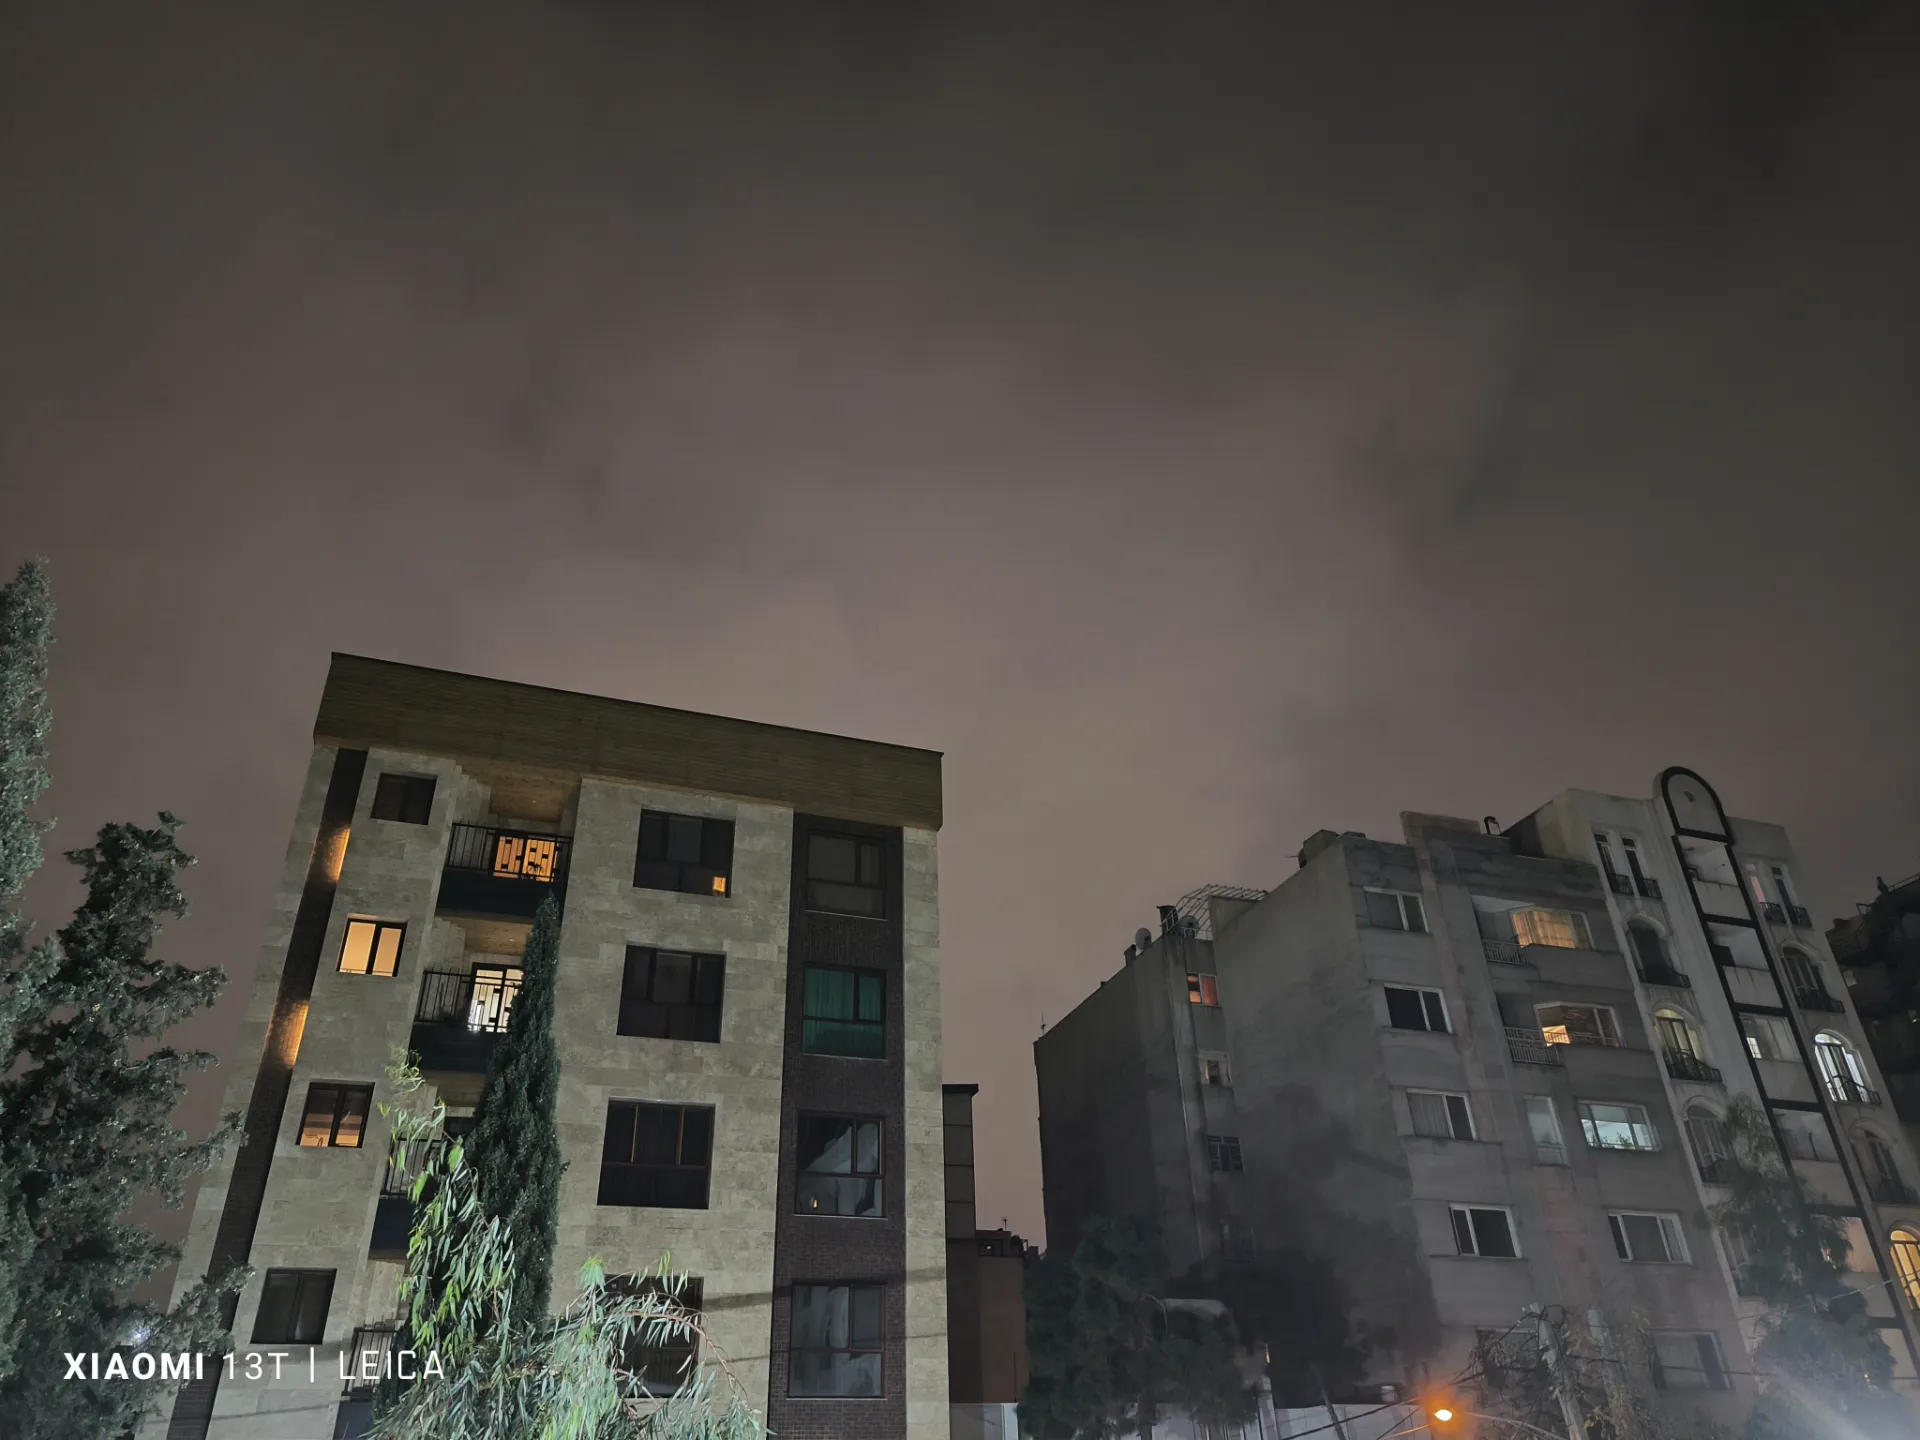 عکسی از نمای بیرون ساختمان در شب ابری